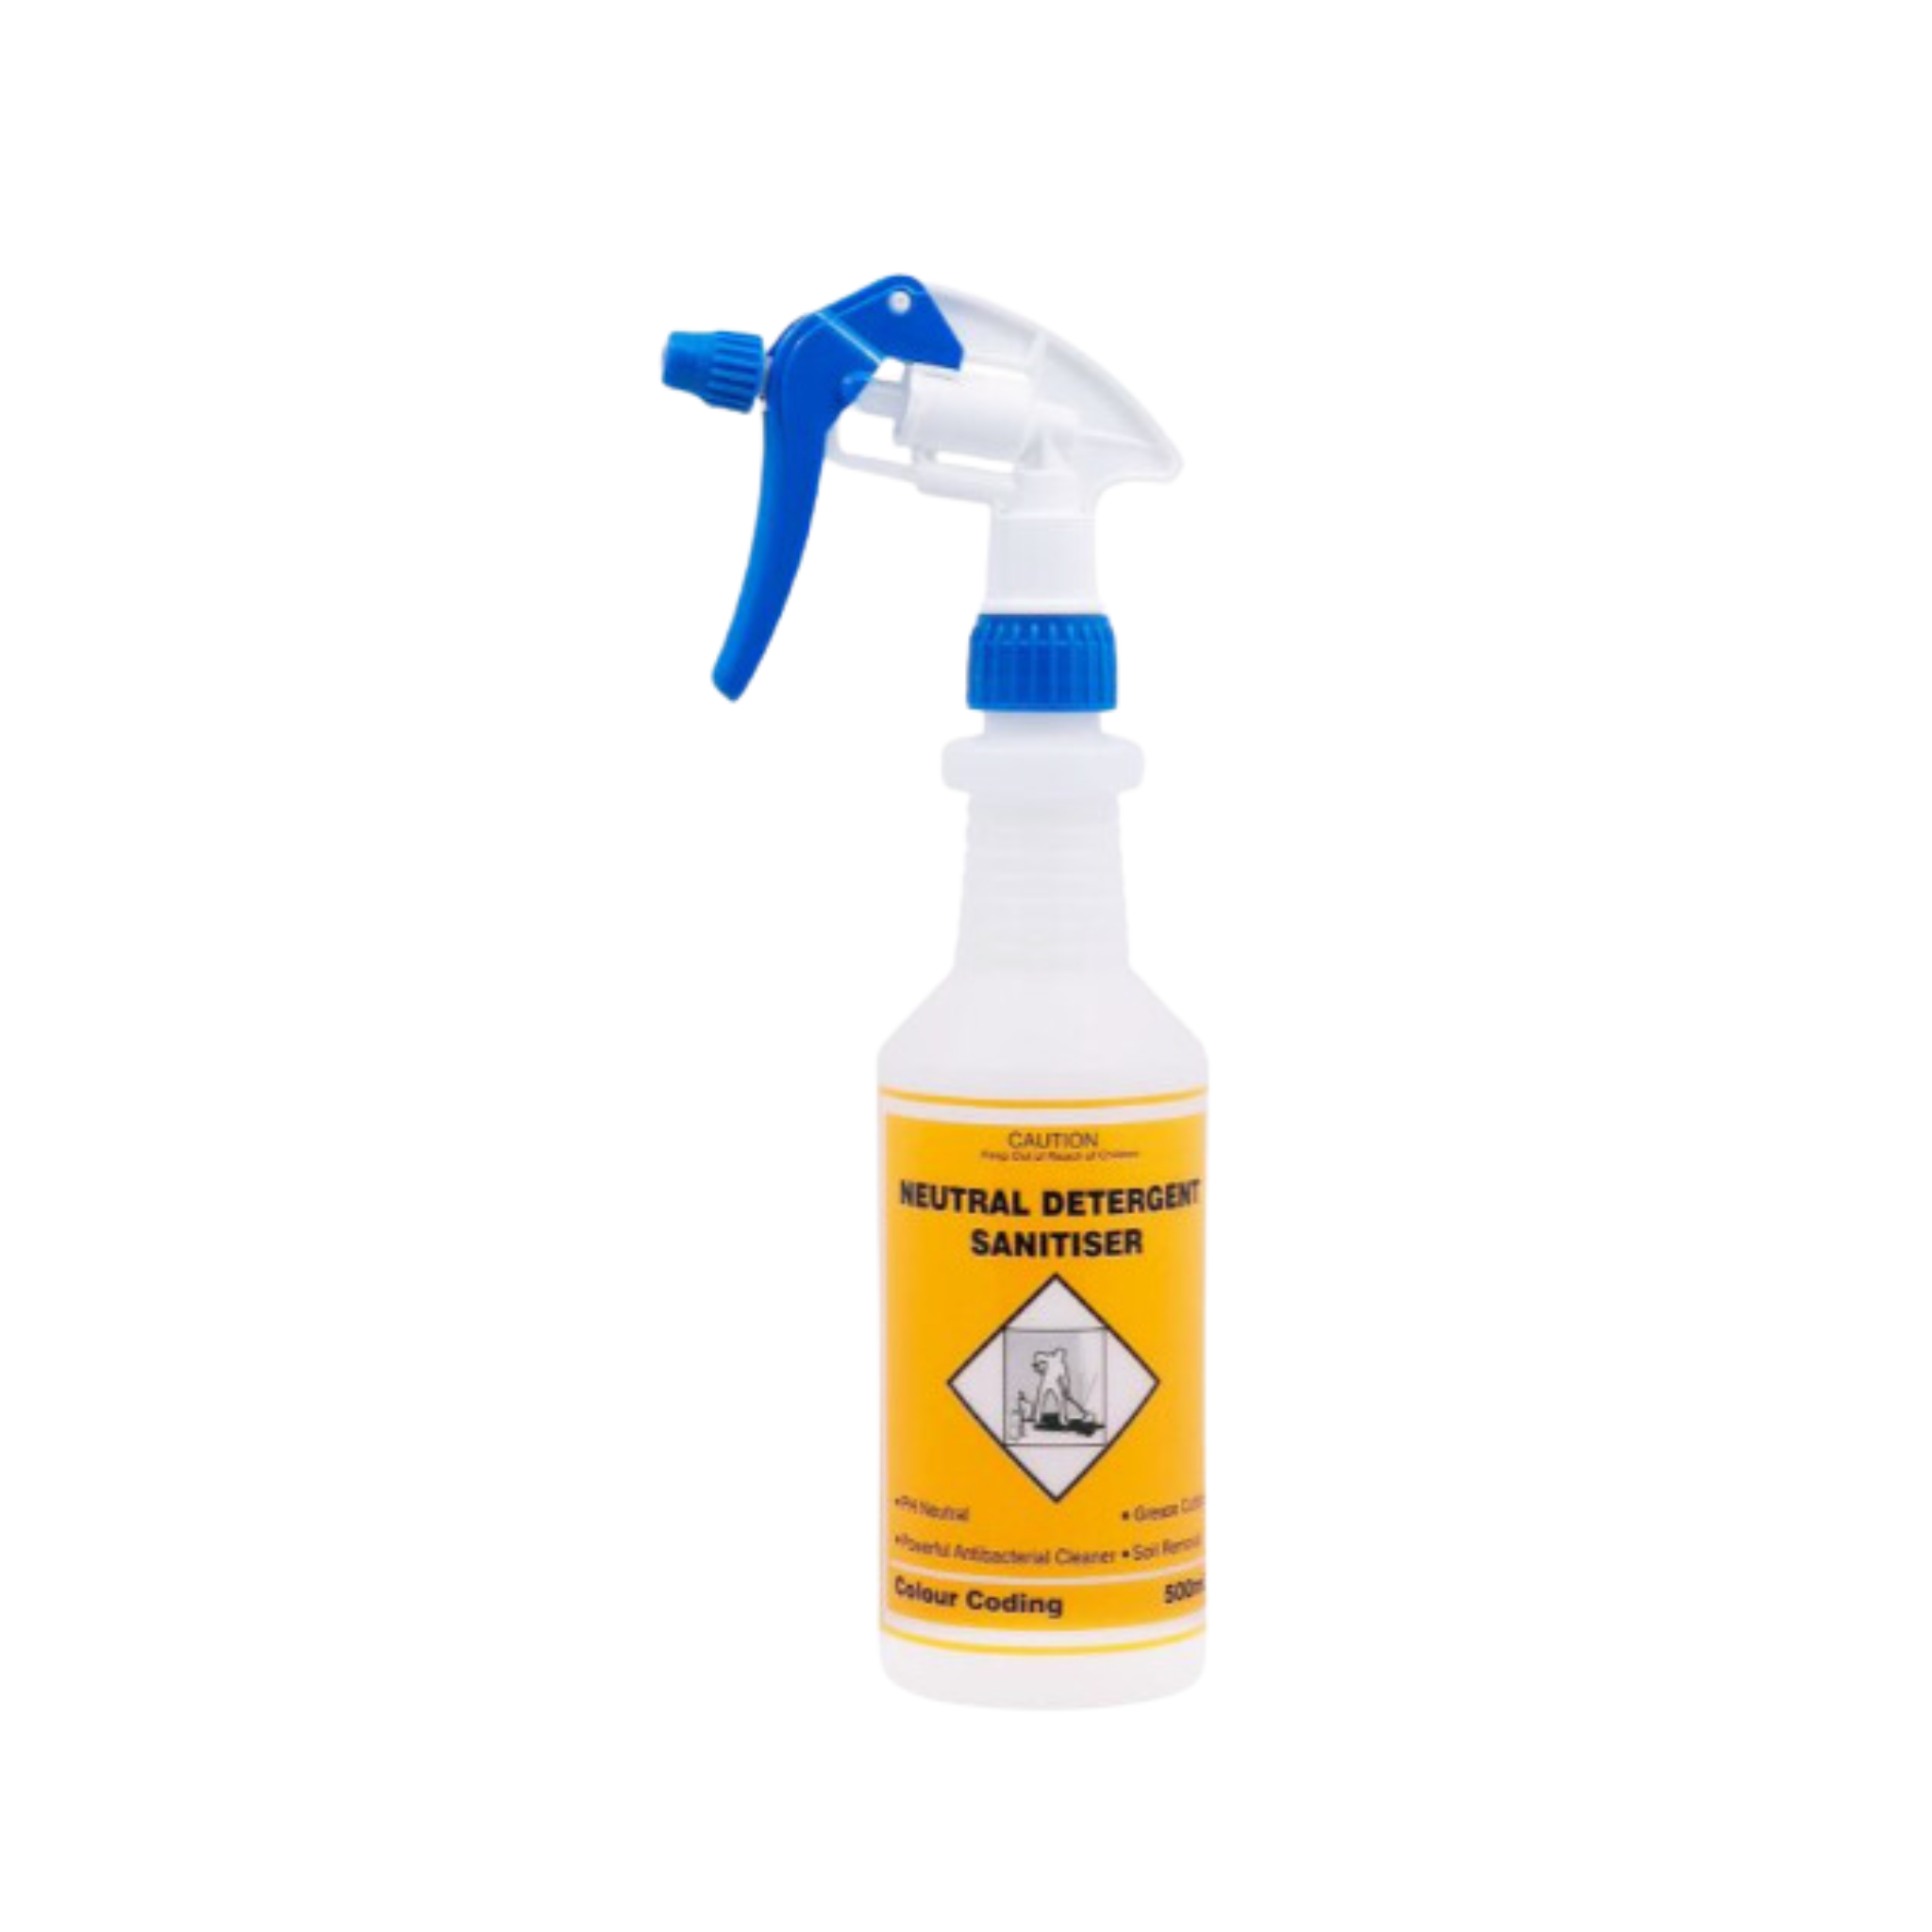 NAN Spray Trigger Bottle - Neutral Detergent Sanitiser